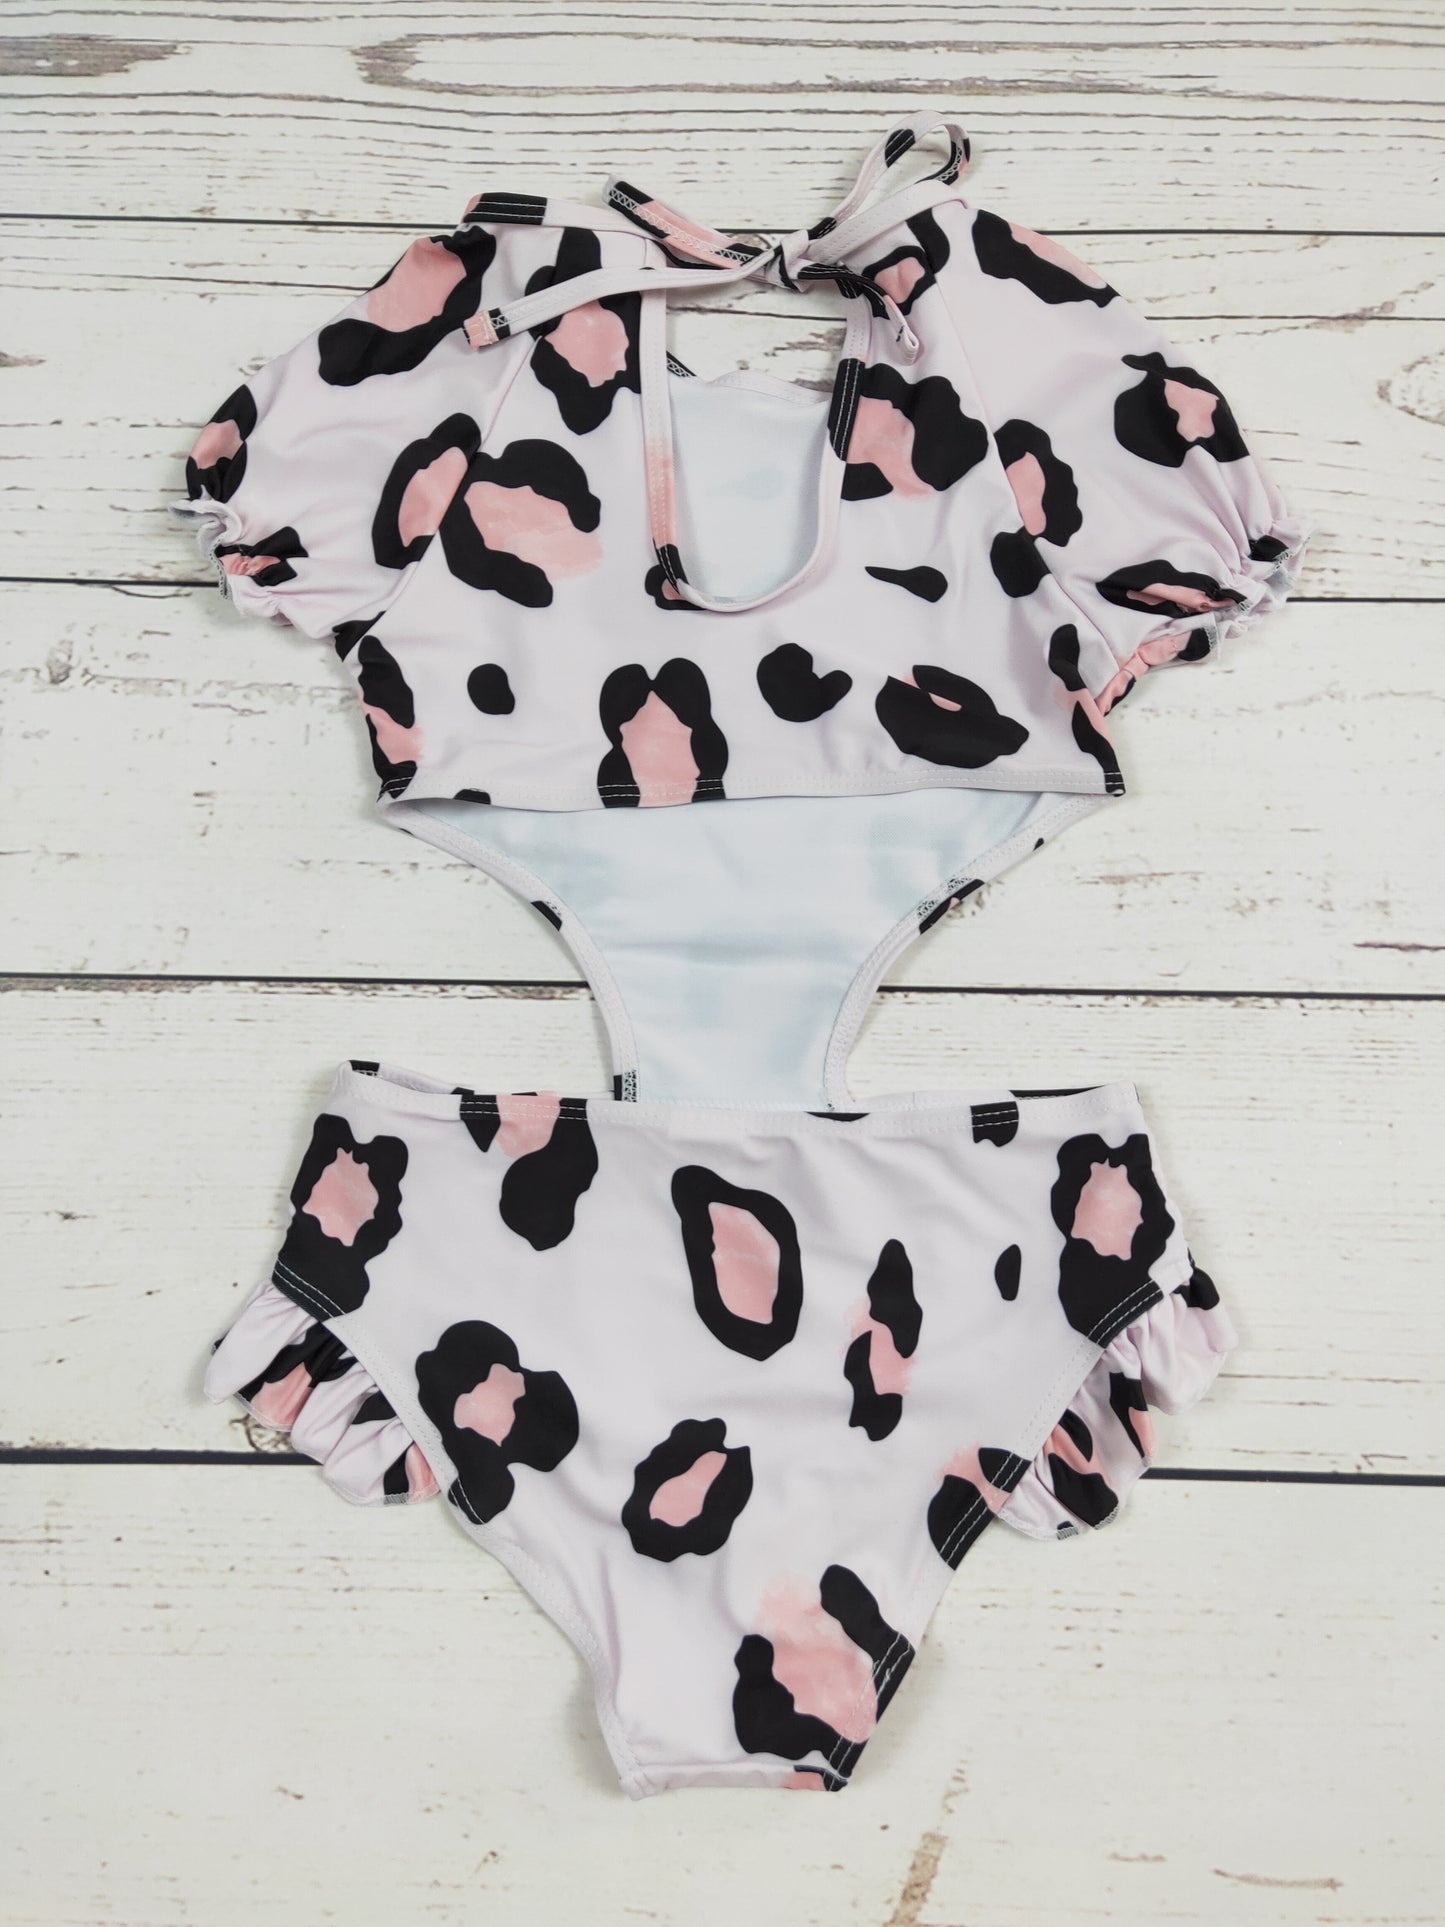 Cheetah Printed One Piece Girls Summer Swimwear